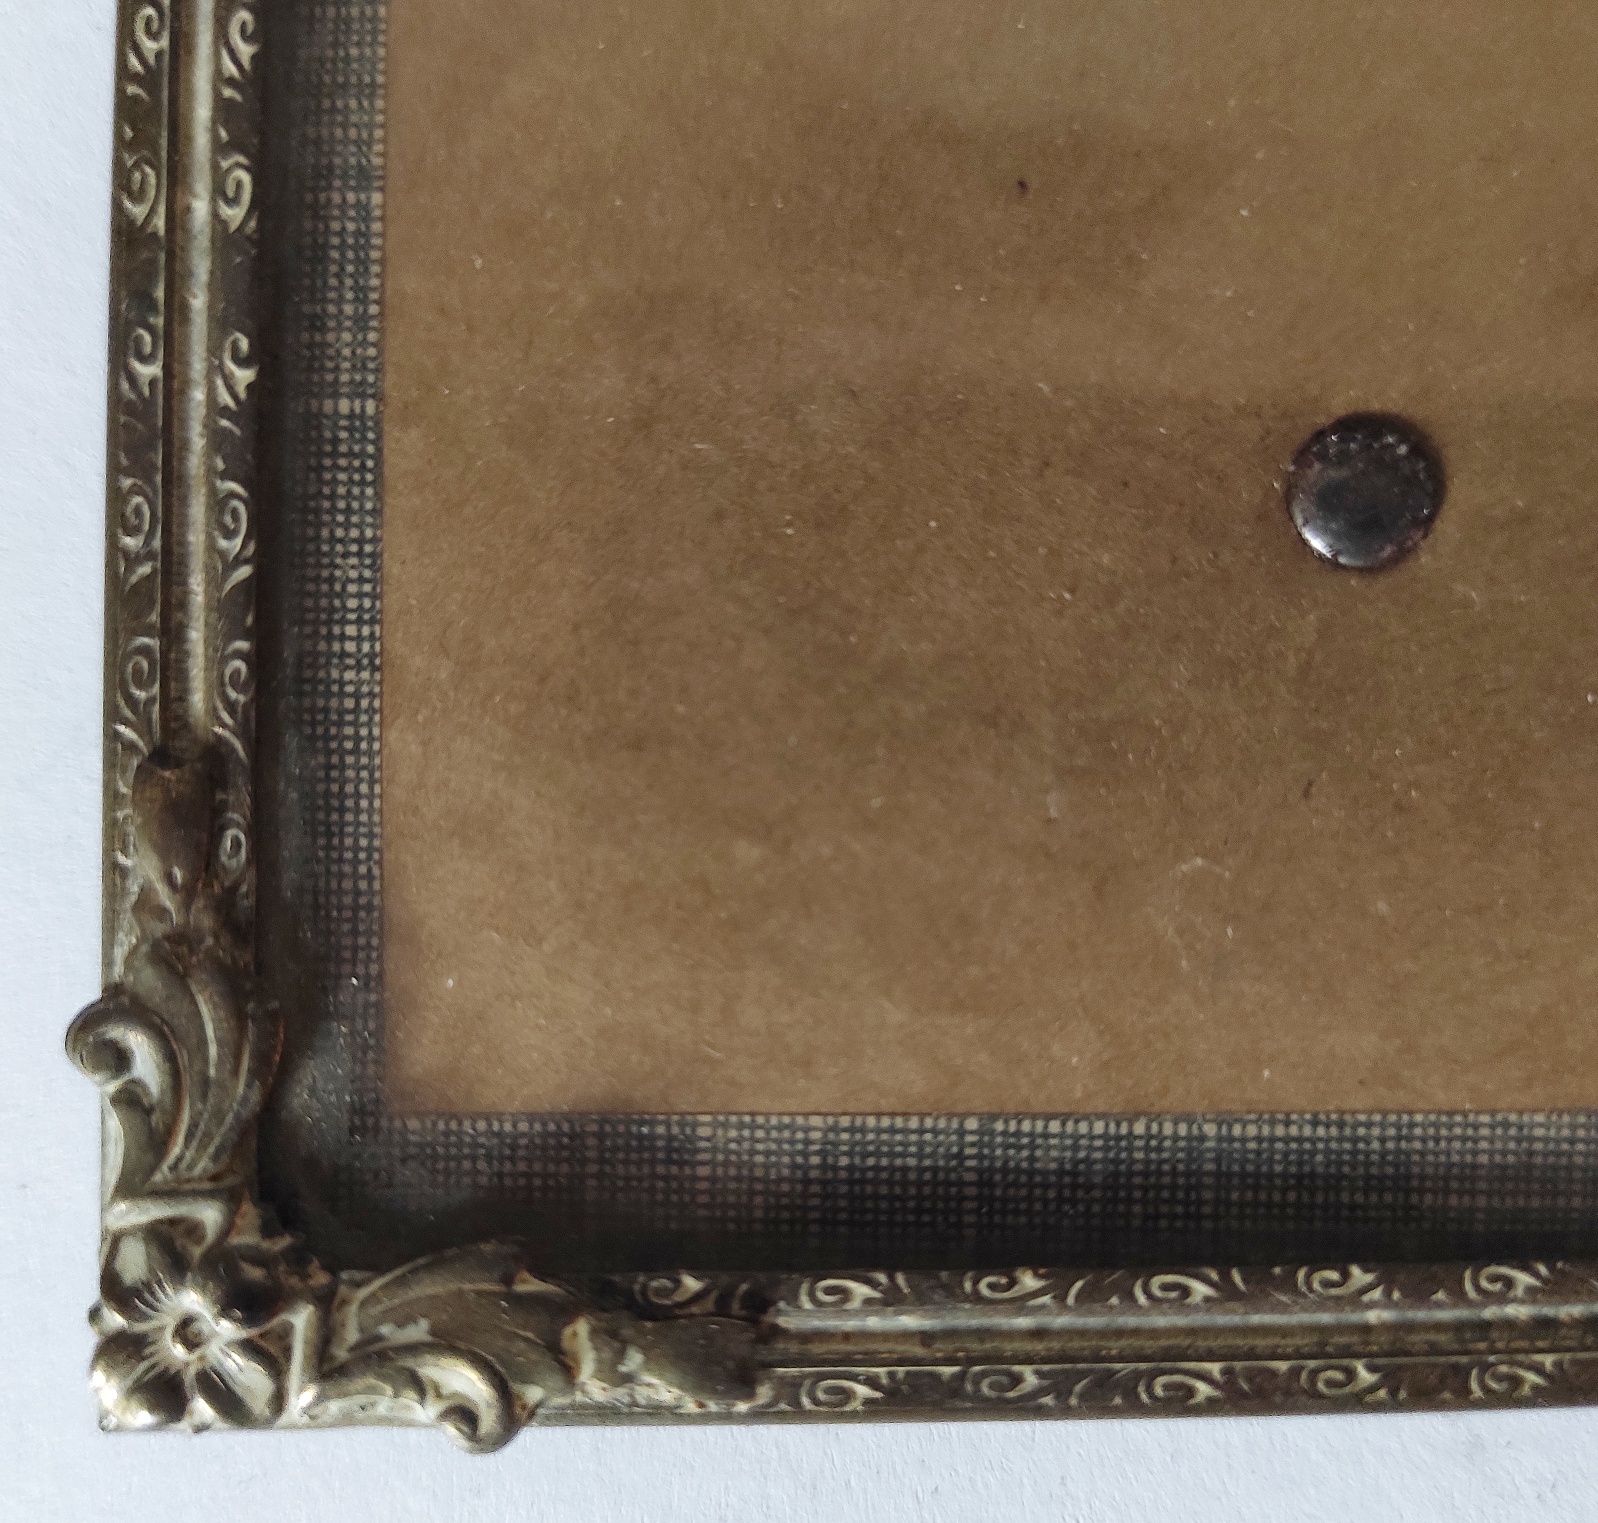 Ramka na zdjęcia mosiądz patynowany szkło wypukłe 9x12 cm